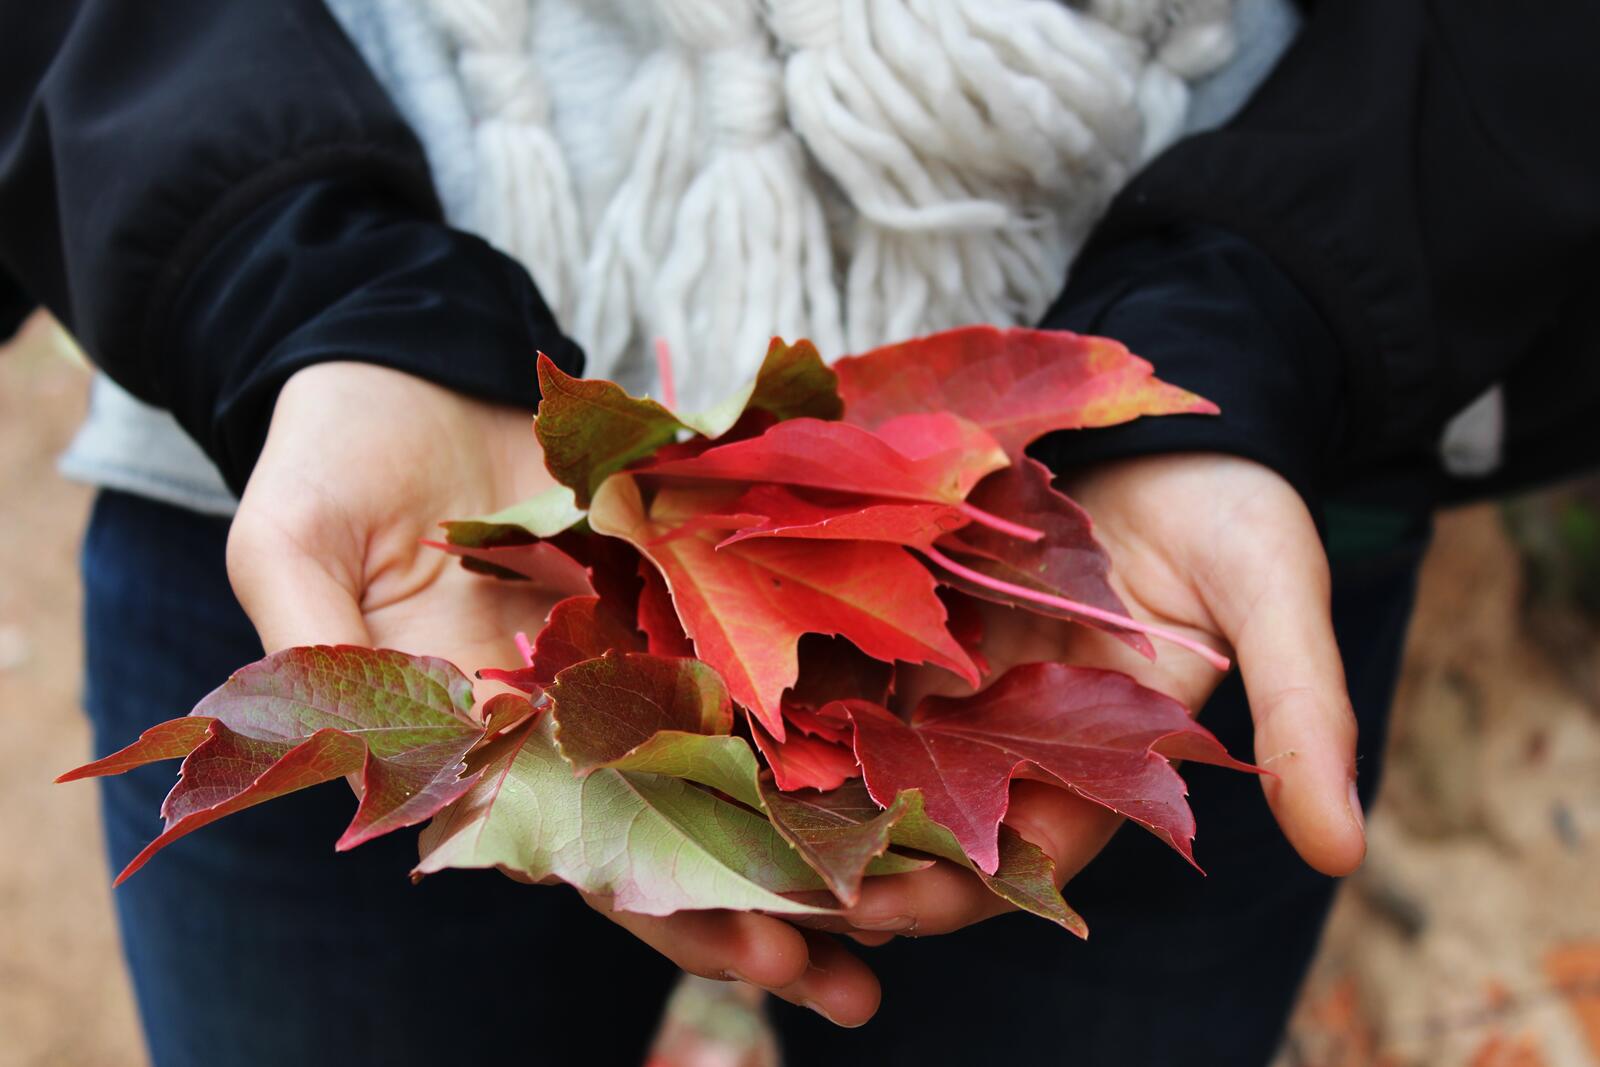 Бесплатное фото Осенние опавшие листья клена в ладонях девушки